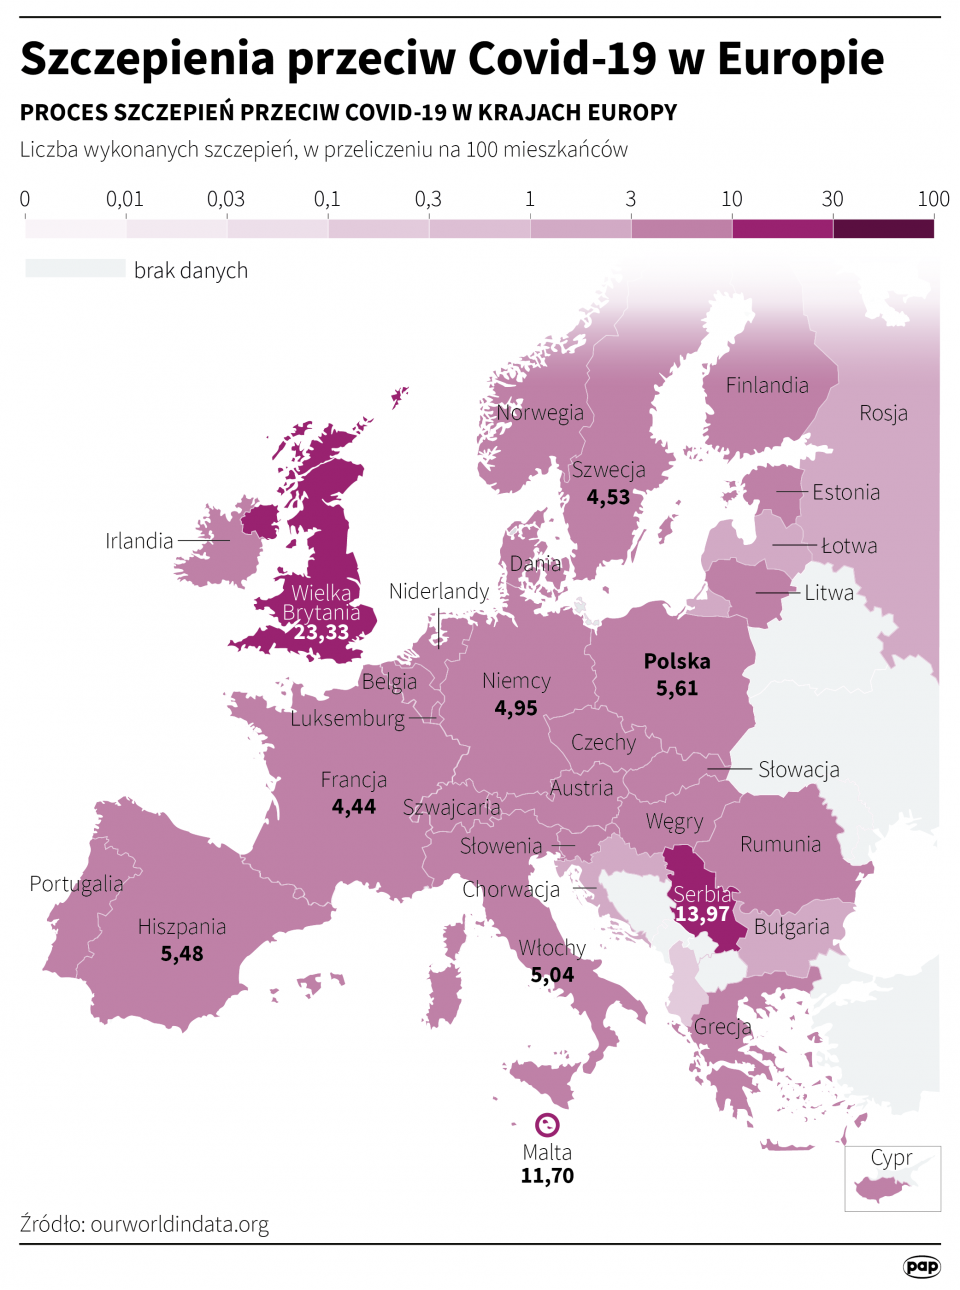 Szczepienia przeciw COVID-19 w Europie [autor: Maria Samczuk, źródło: PAP]